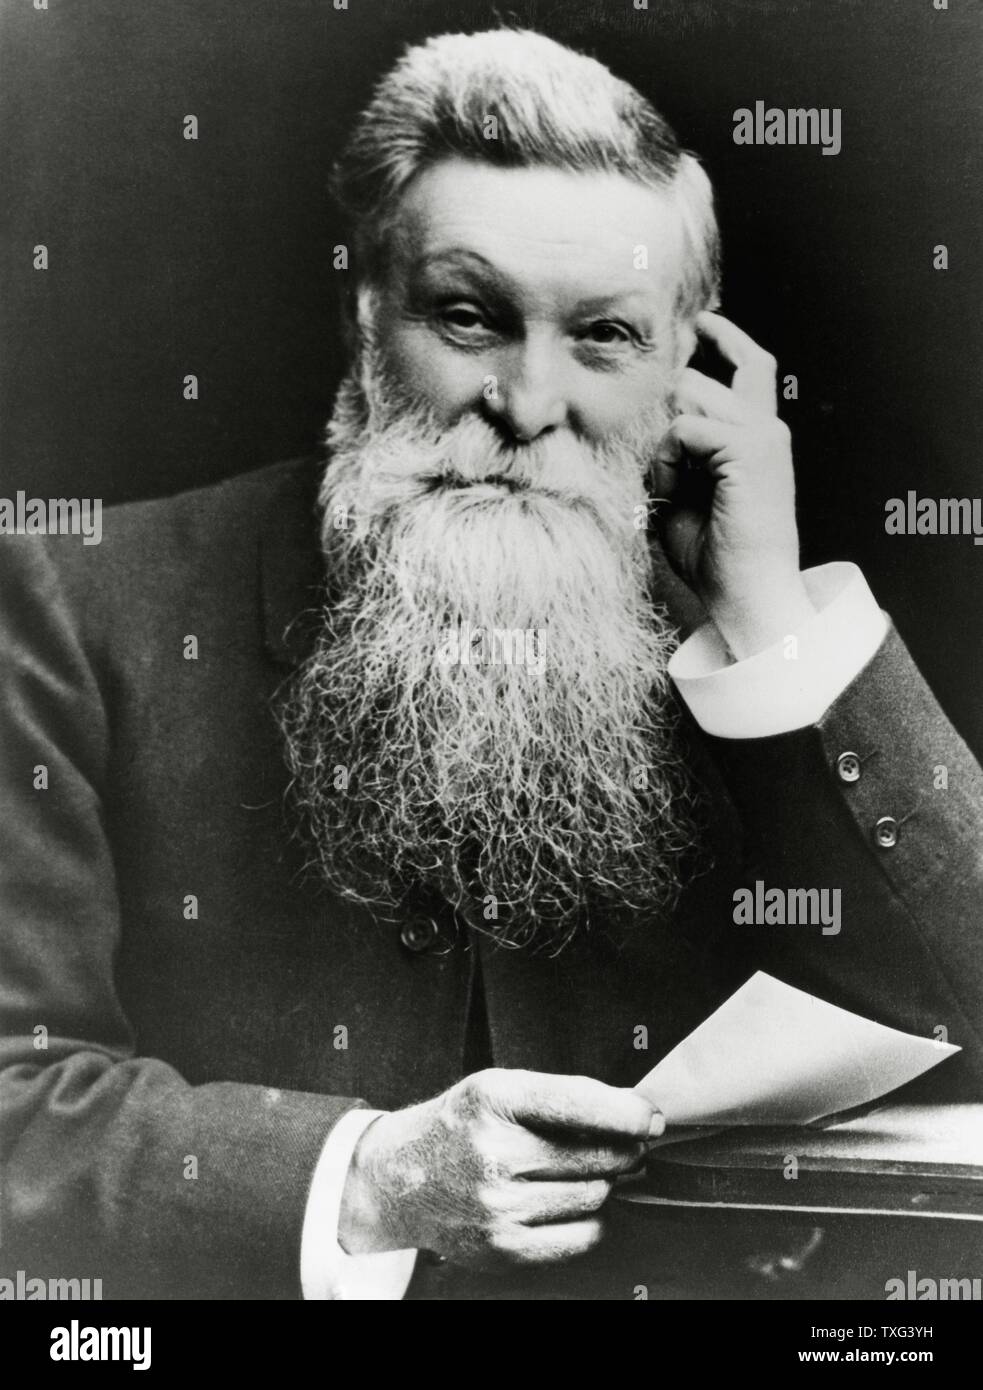 Schottische John Boyd Dunlop, Erfinder des ersten Fahrzeugs Rad Reifen,  dessen Patent William Harvey du Cros im Jahre 1888 kaufte ein reifen Werk  zu finden. Hochformat ca. 1900 Stockfotografie - Alamy